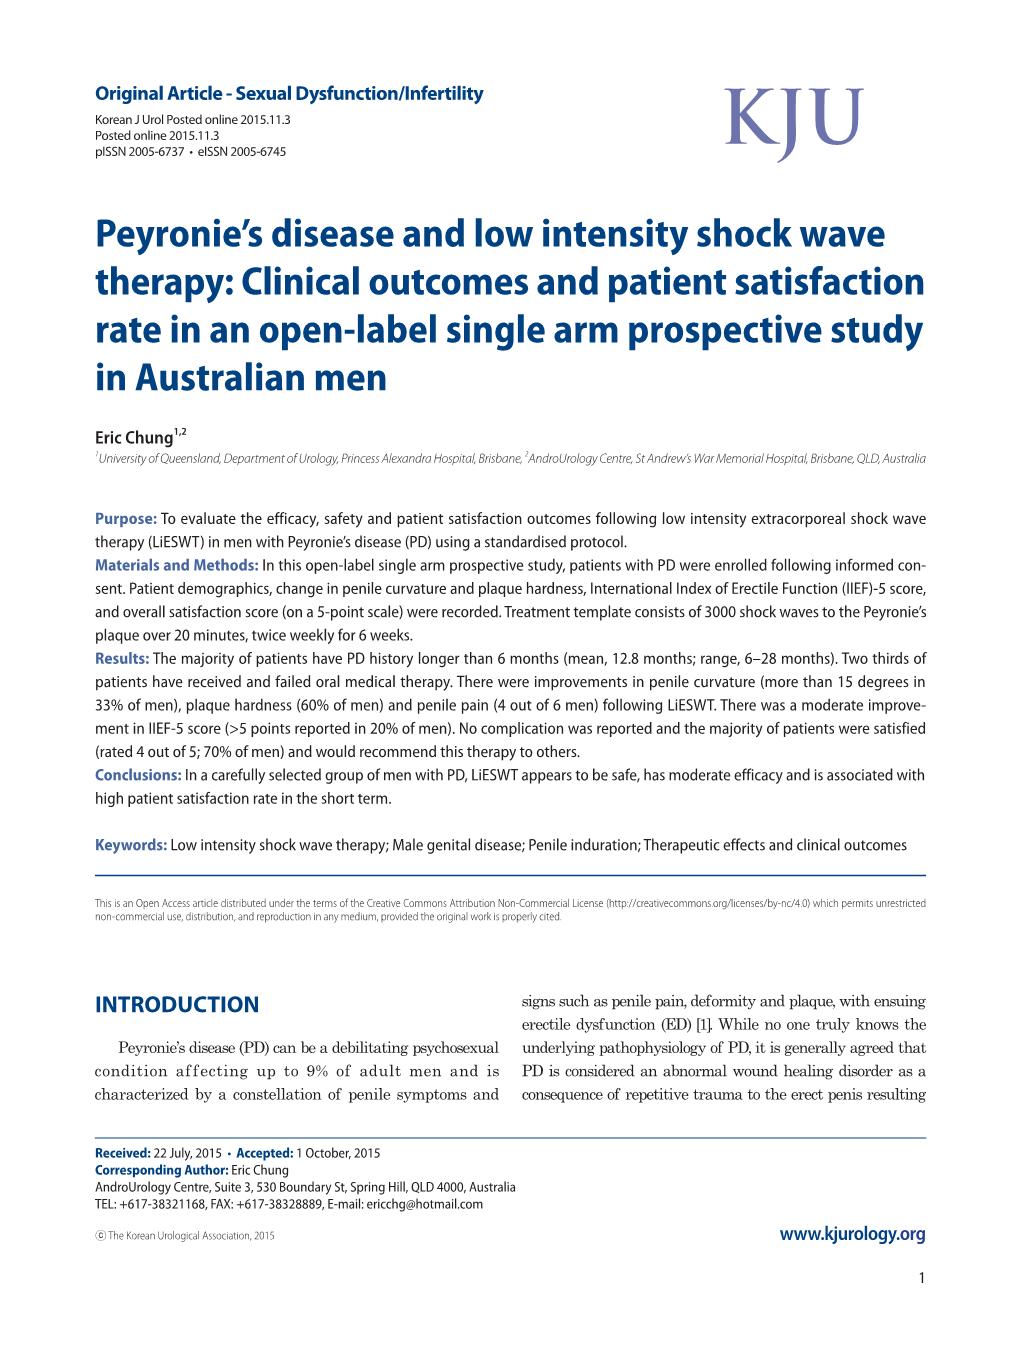 Peyronie's Disease and Low Intensity